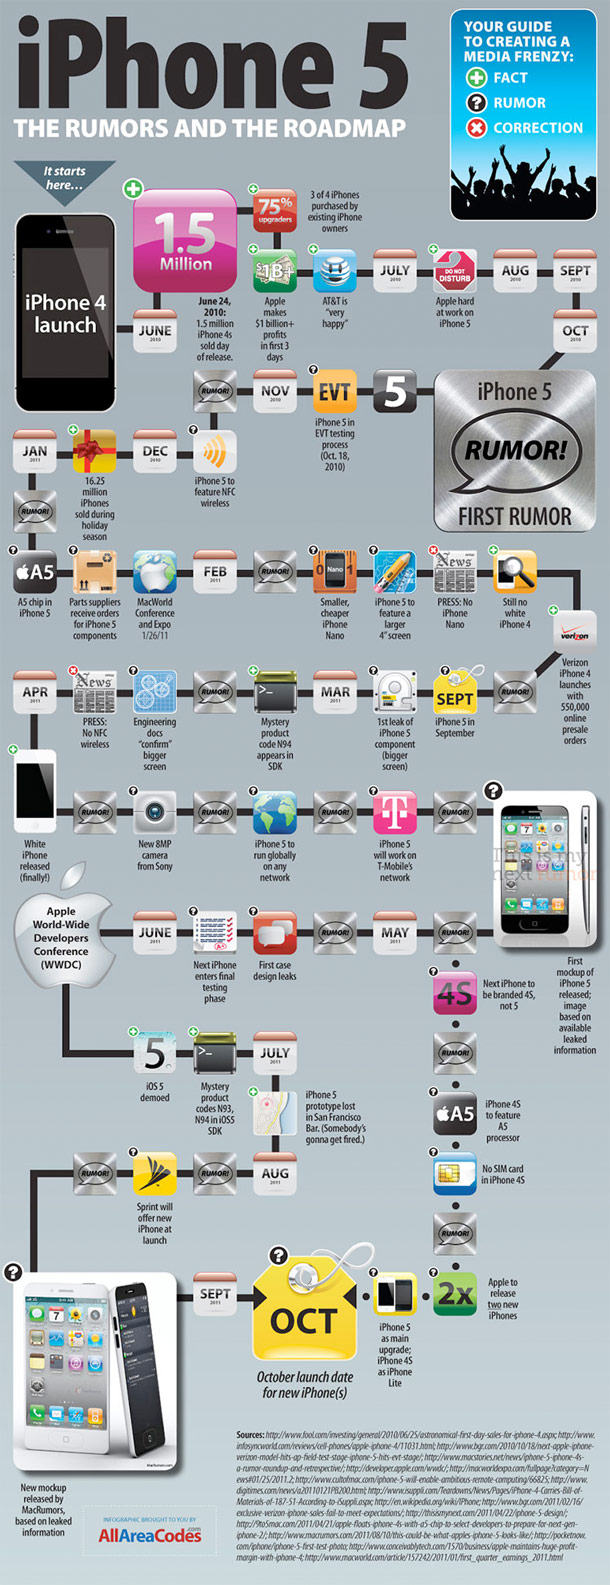 iPhone 5 geruchten en roadmap